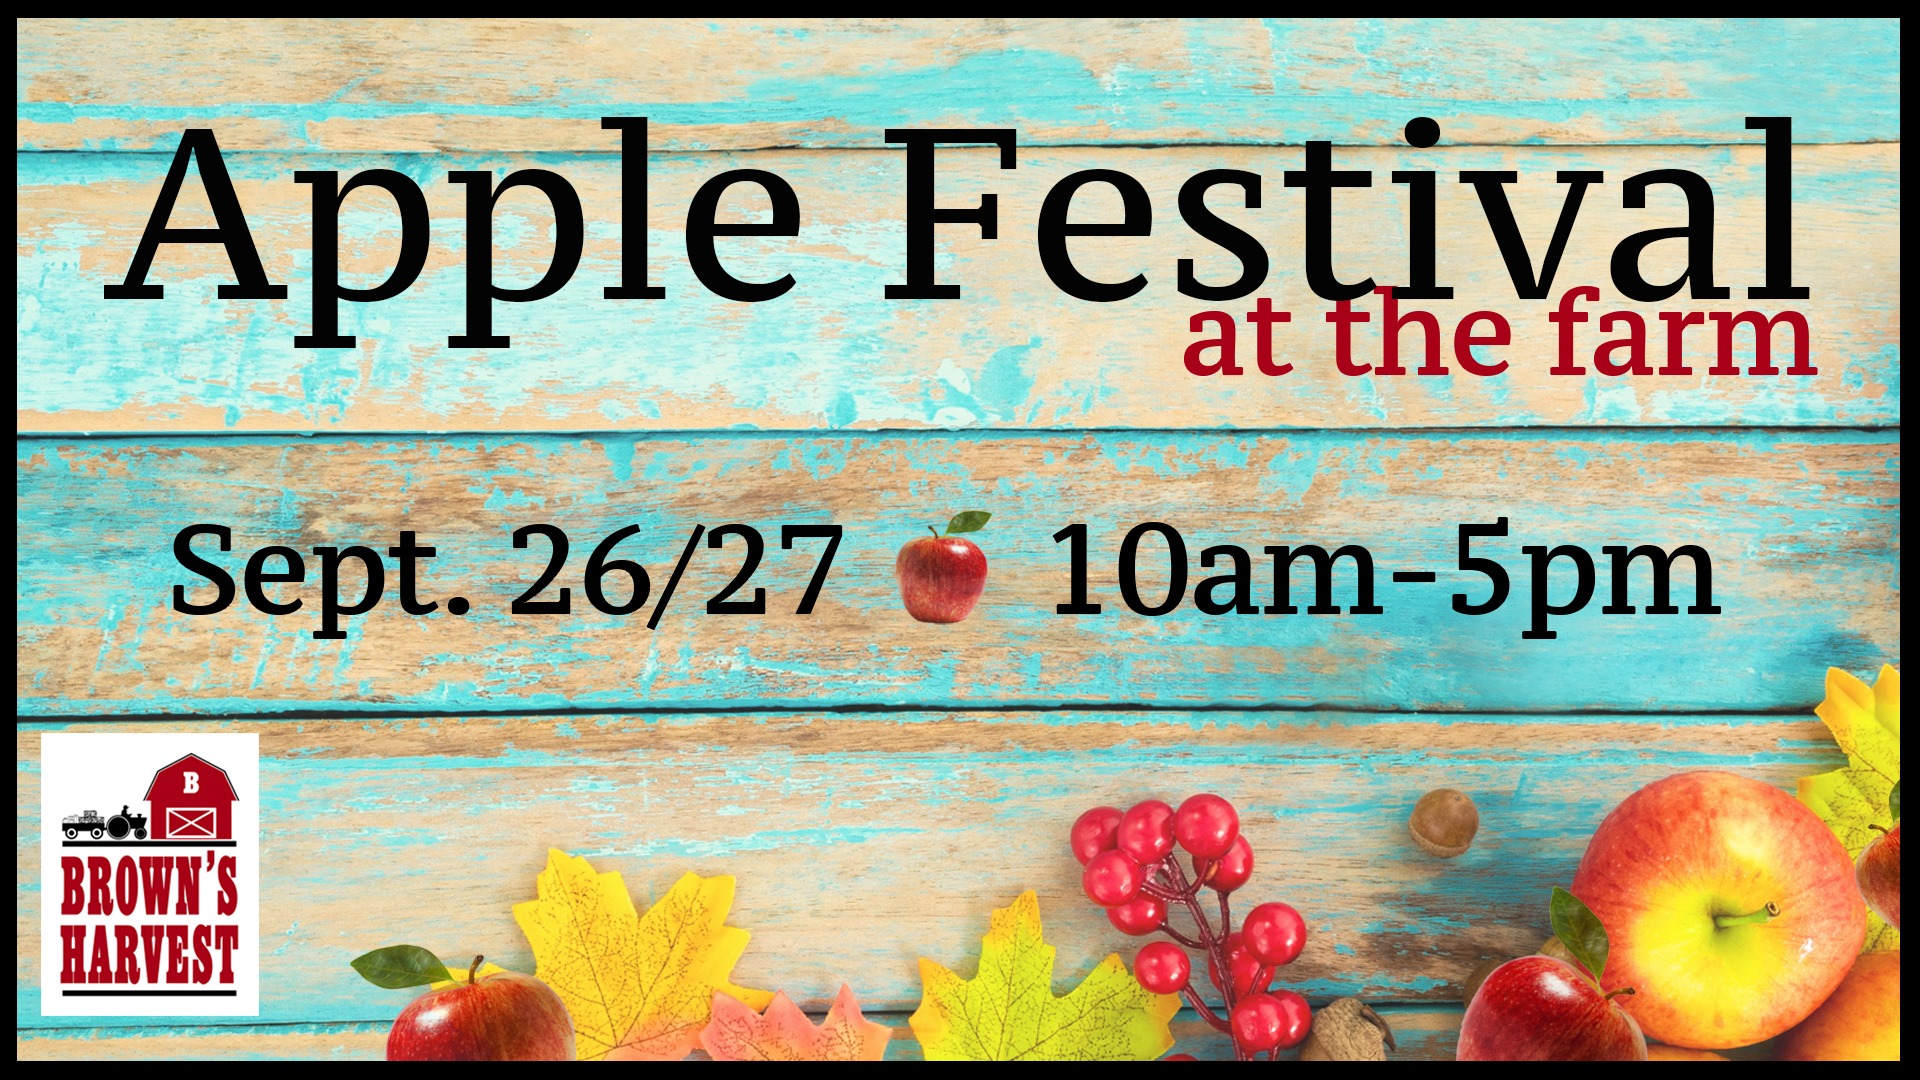 Brown's Harvest Apple Festival